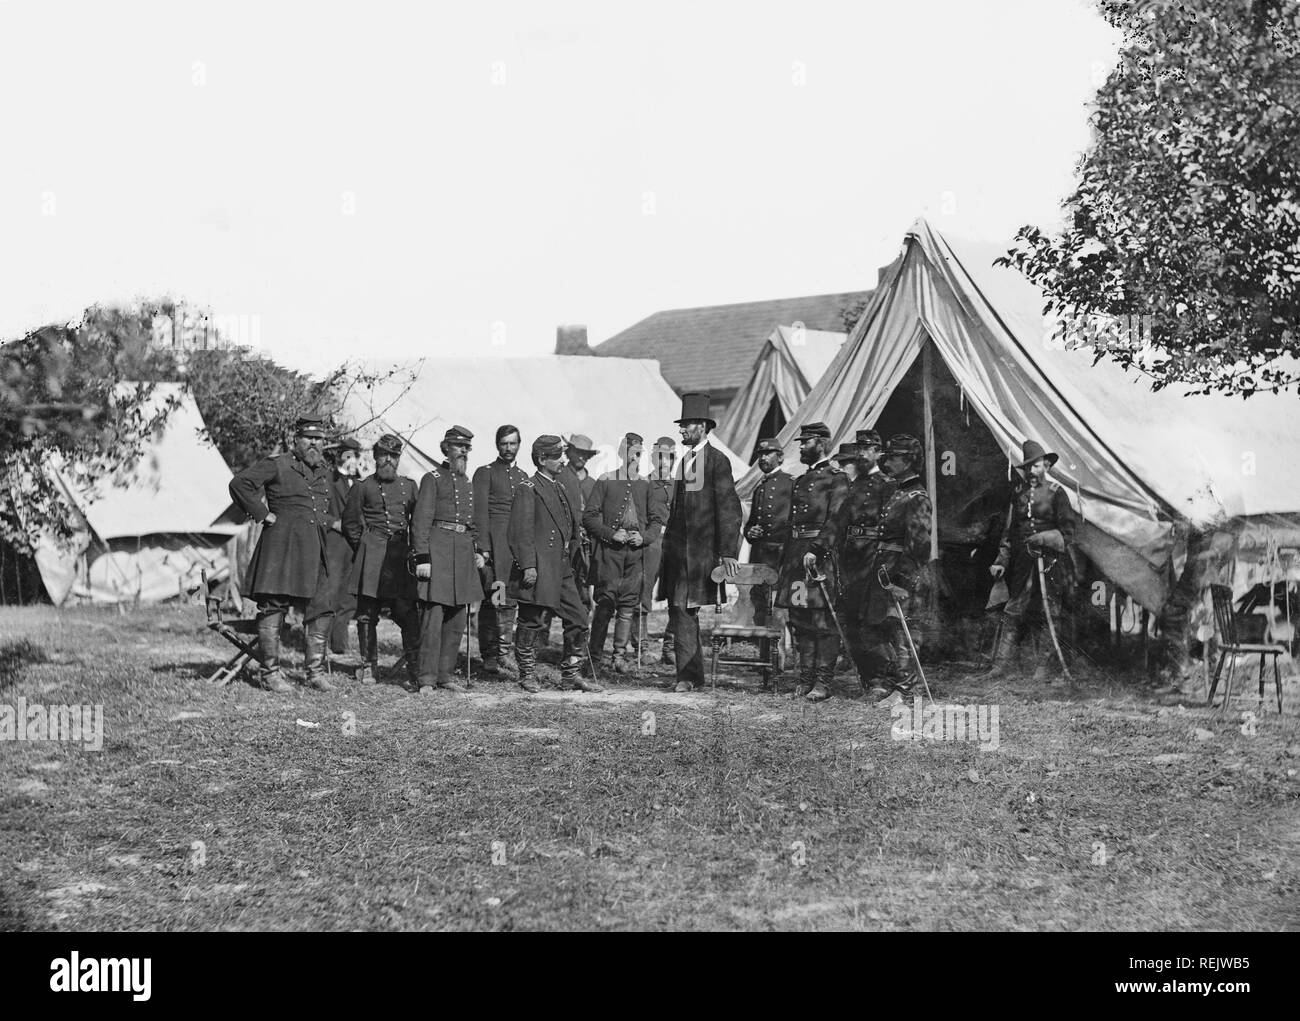 Le président américain Abraham Lincoln avec le général George B. McClellan et groupe d'officiers après la bataille d'Antietam, Alexander Gardner, le 3 octobre 1862 Banque D'Images